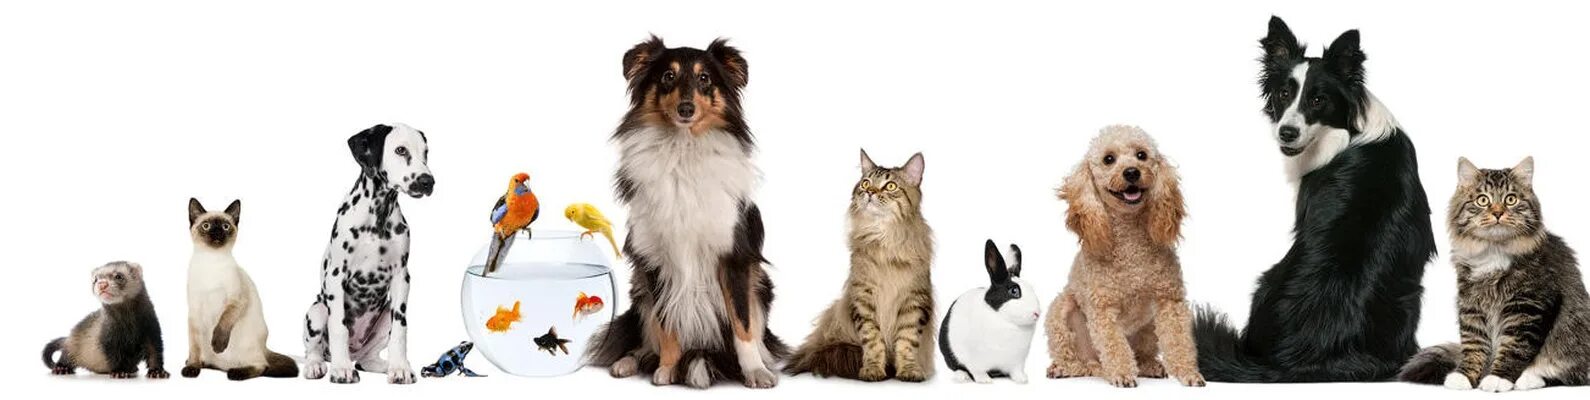 Методы улучшения пород кошек собак в клубах. Разные породы кошек и собак. Кошка и собака на белом фоне. Кошка и собака на прозрачном фоне. Кошка и собака в одной картинке.